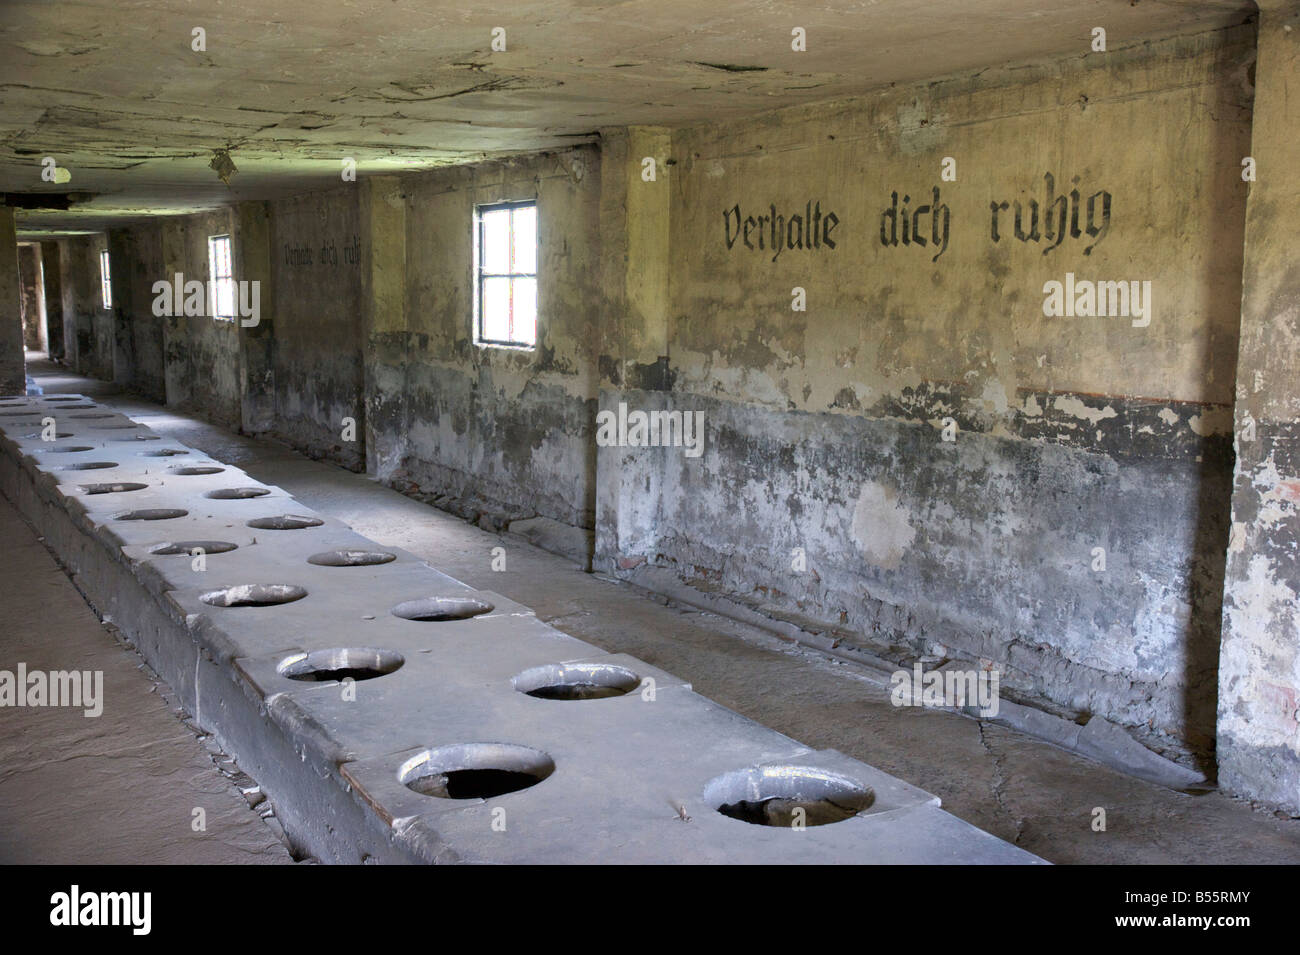 Misa wc barrack con la inscripción 'Verhalte dich ruhig' en el antiguo campo de concentración de Auschwitz II (Birkenau) Foto de stock